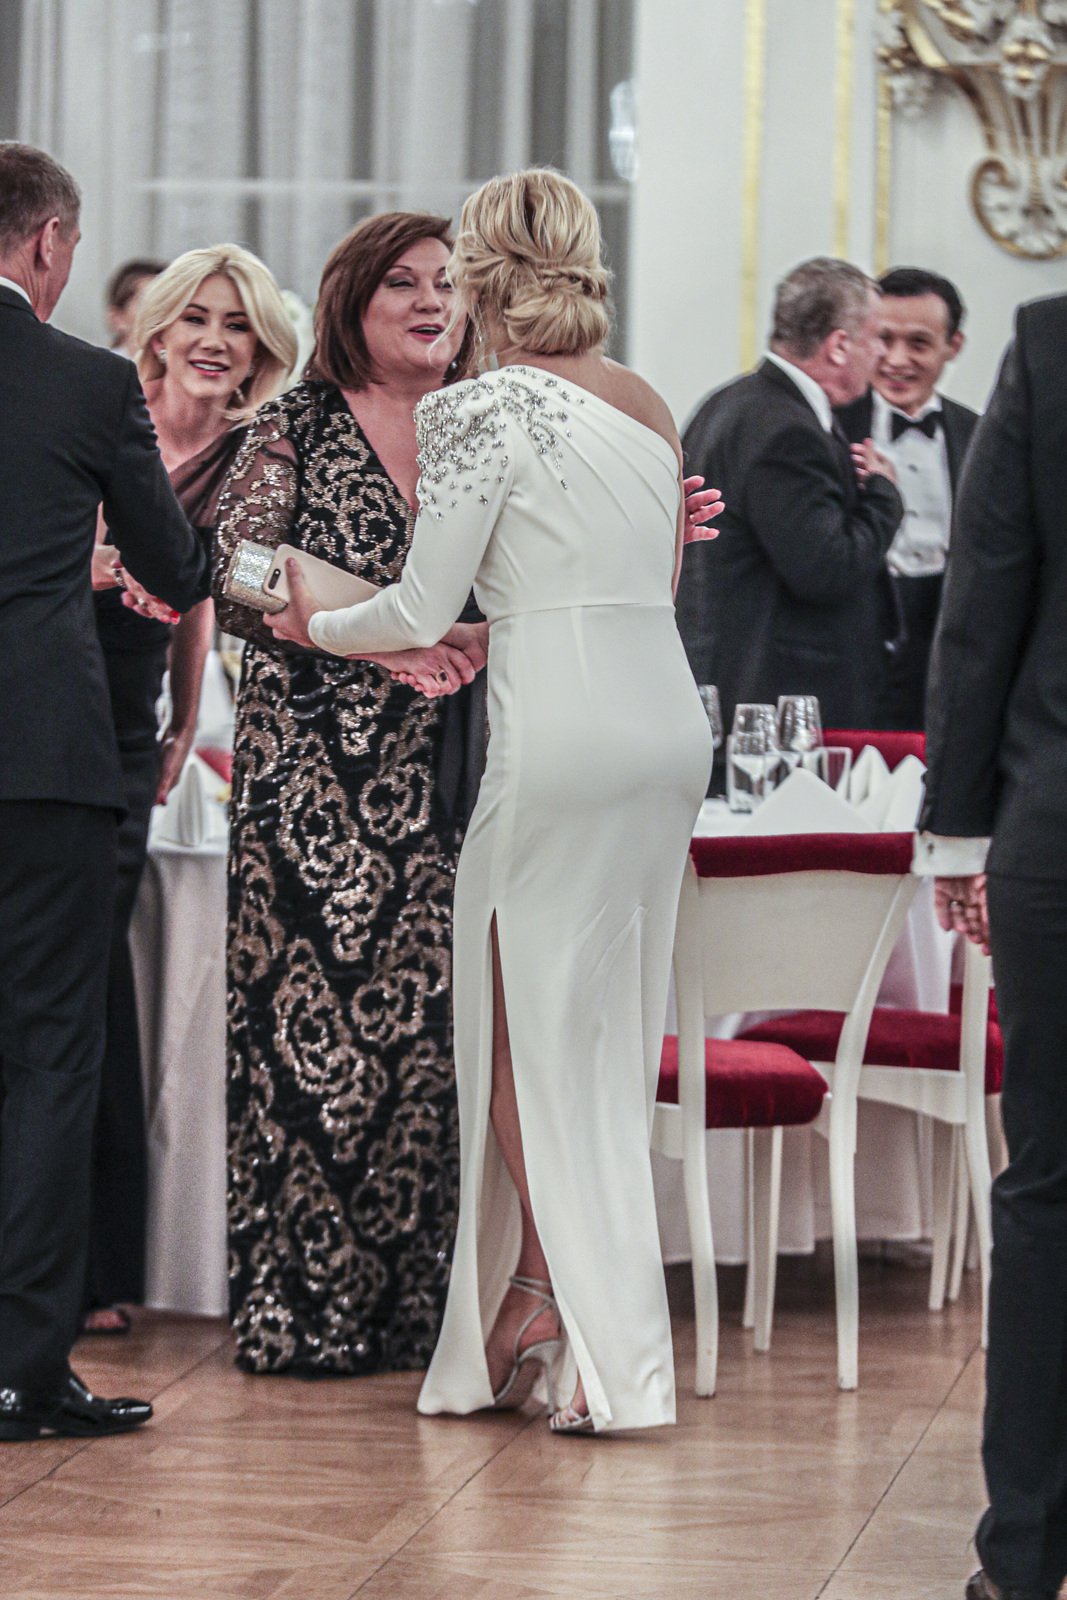 Ples na Hradě: Žena premiéra Monika Babišová v odvážných šatech s ministryní financí Alenou Schillerovou (10.1.2020)